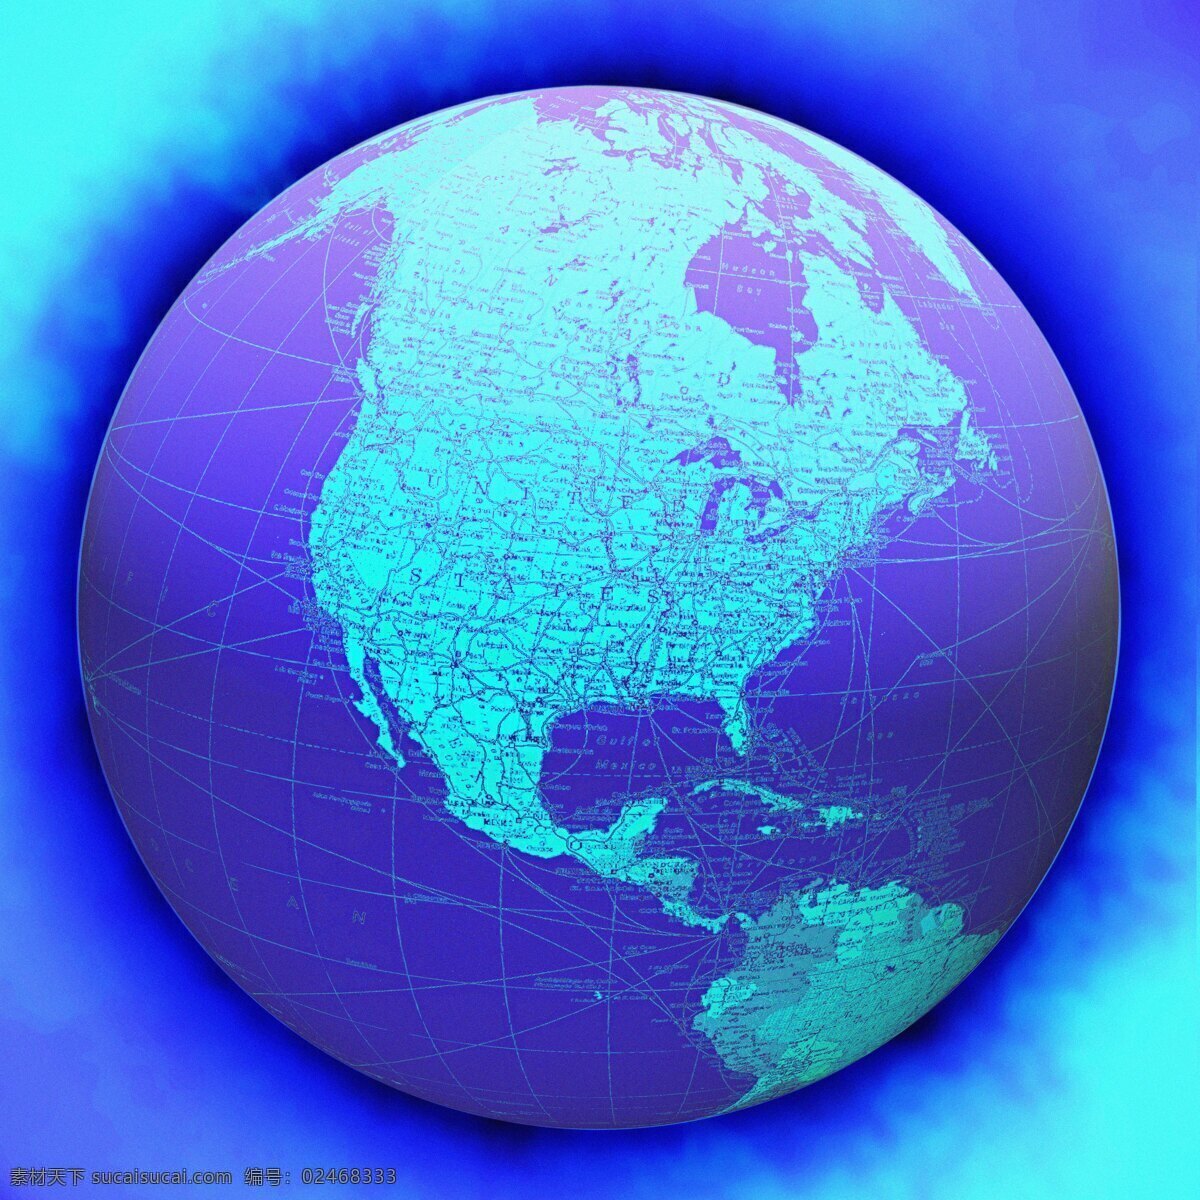 蓝色 梦幻 地球 背景 地球背景 科技 网络 信息 创意 抽象 地图 高清地球图片 高清图片 地球图片 环境家居